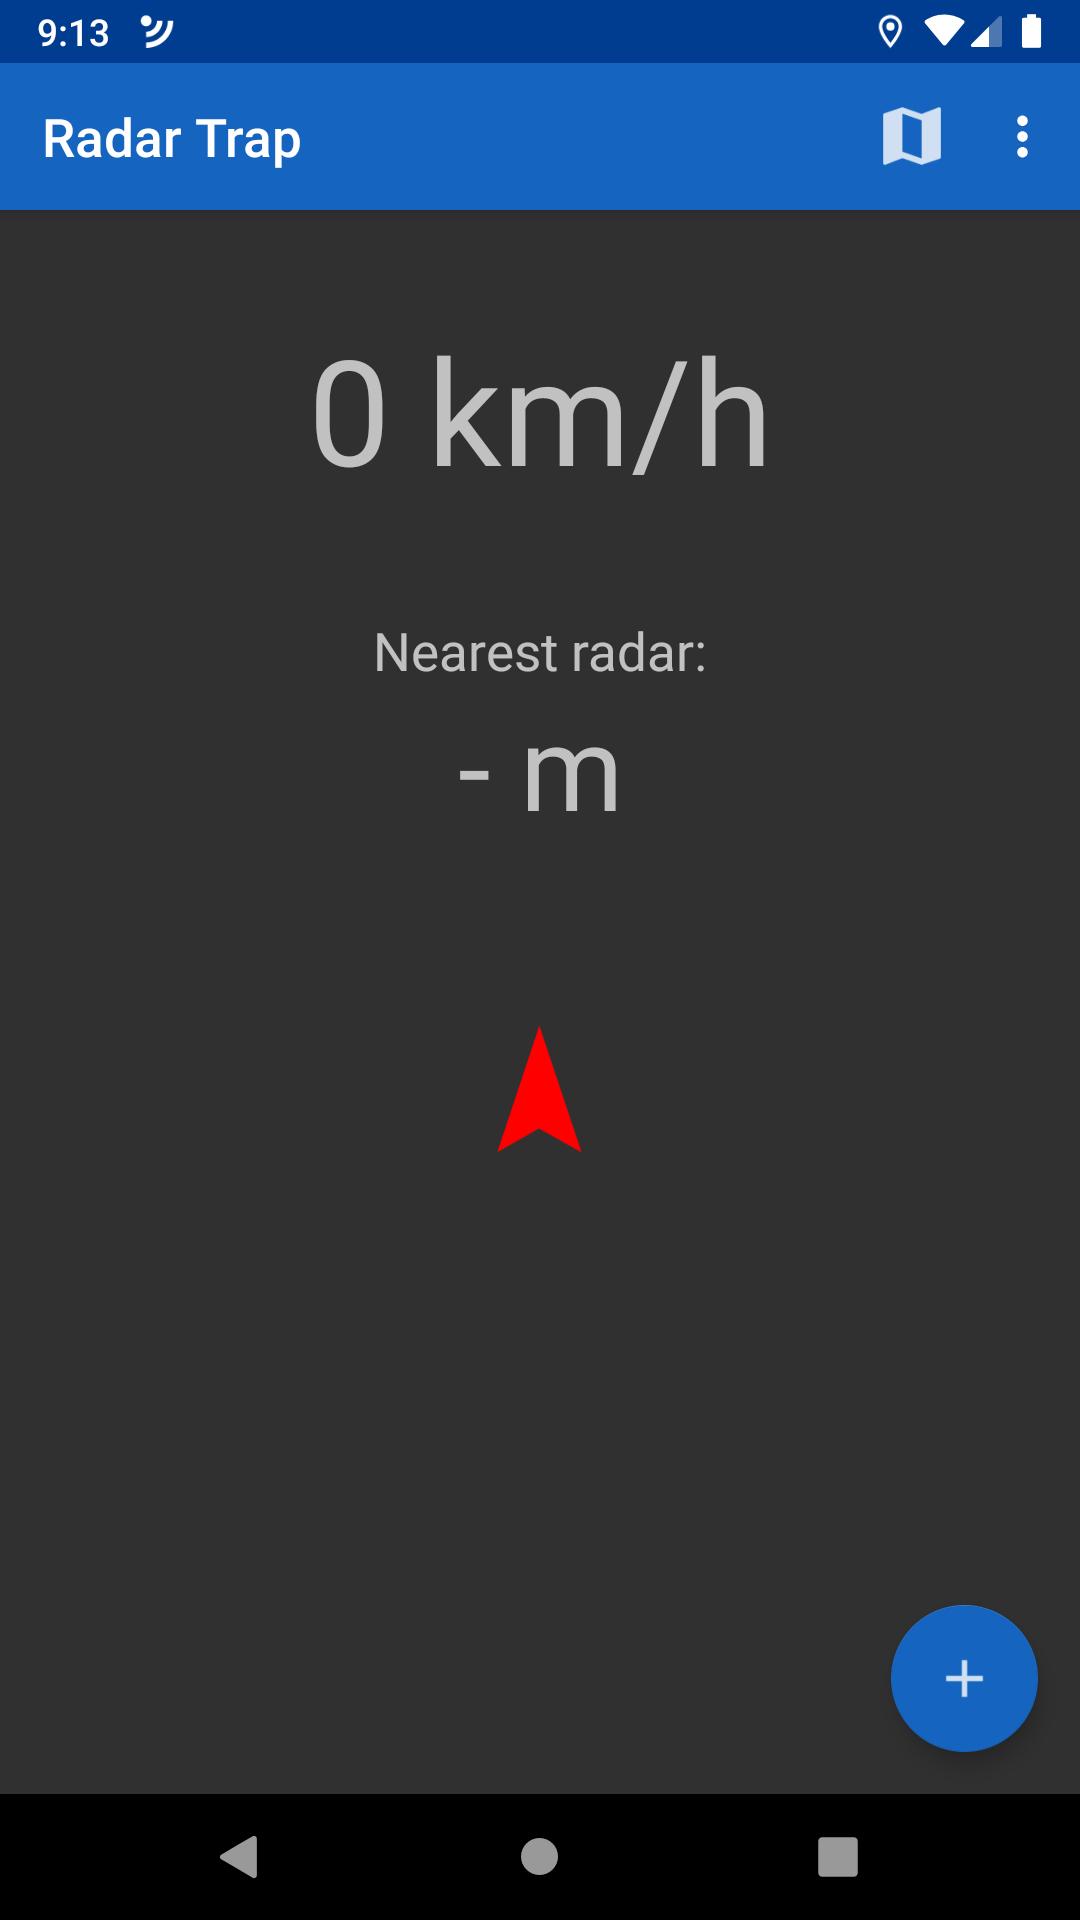 Radar Trap.